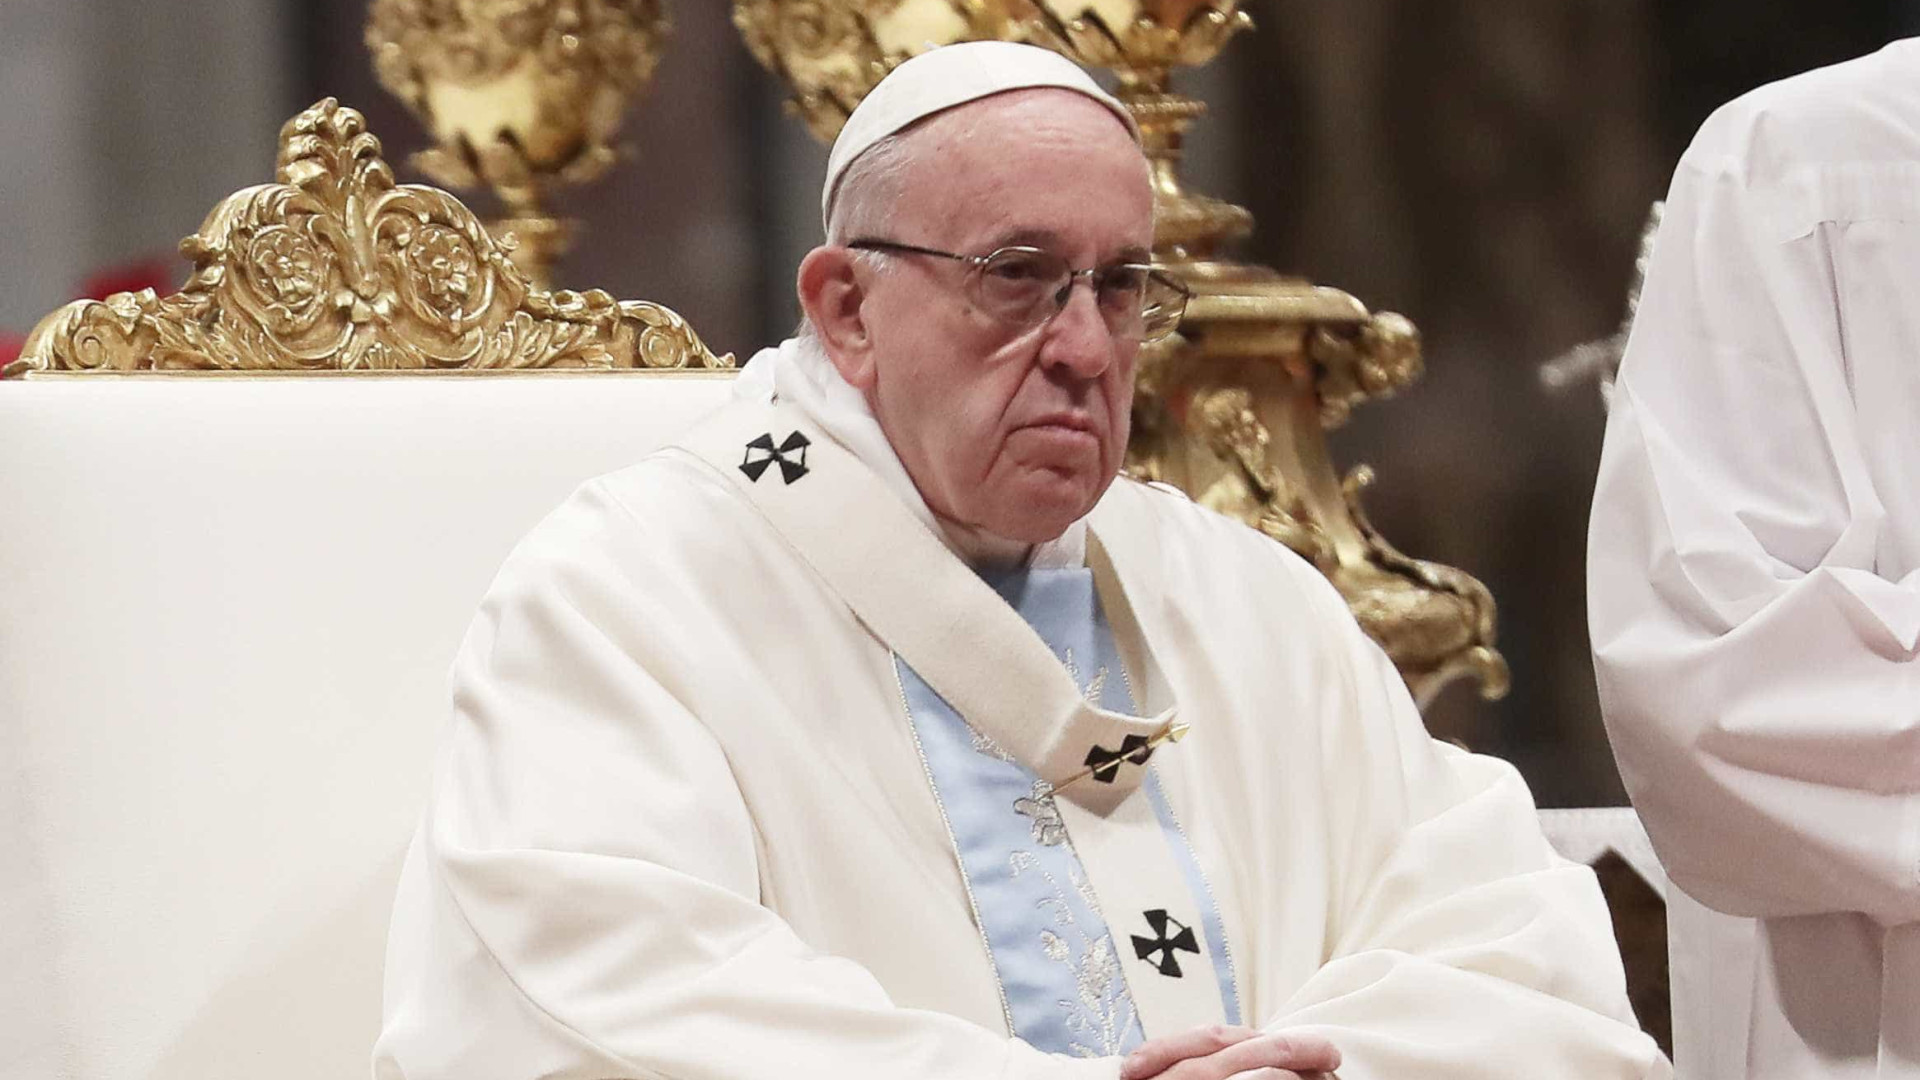 Mundo está conectado, mas desunido, diz Papa Francisco em discurso